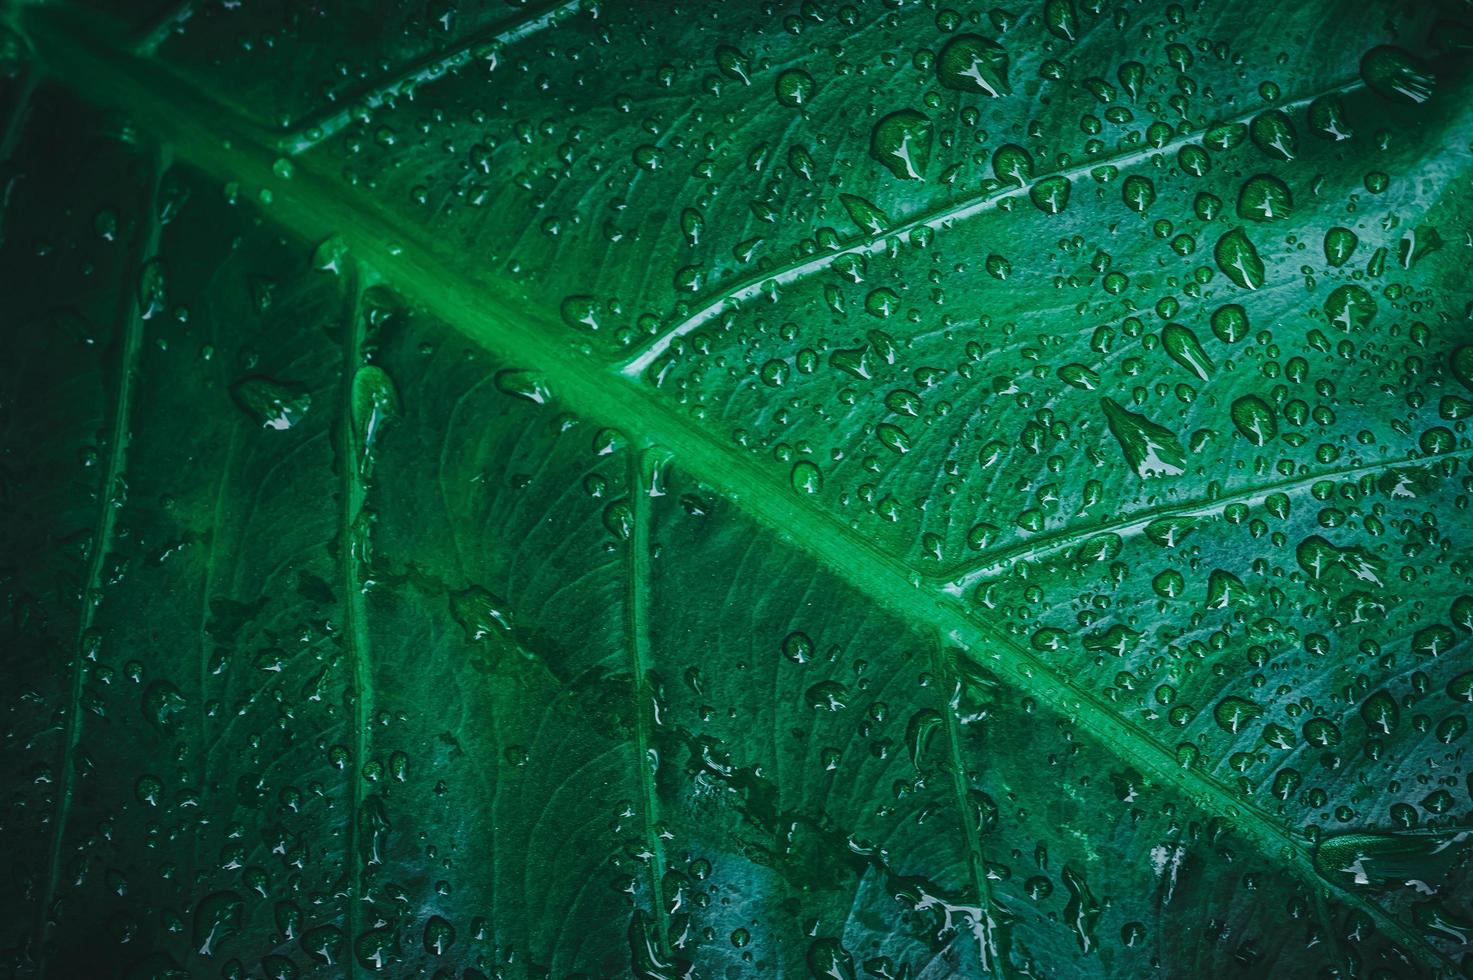 Makro-Wassertröpfchen auf Blättern lieben die Umwelt foto